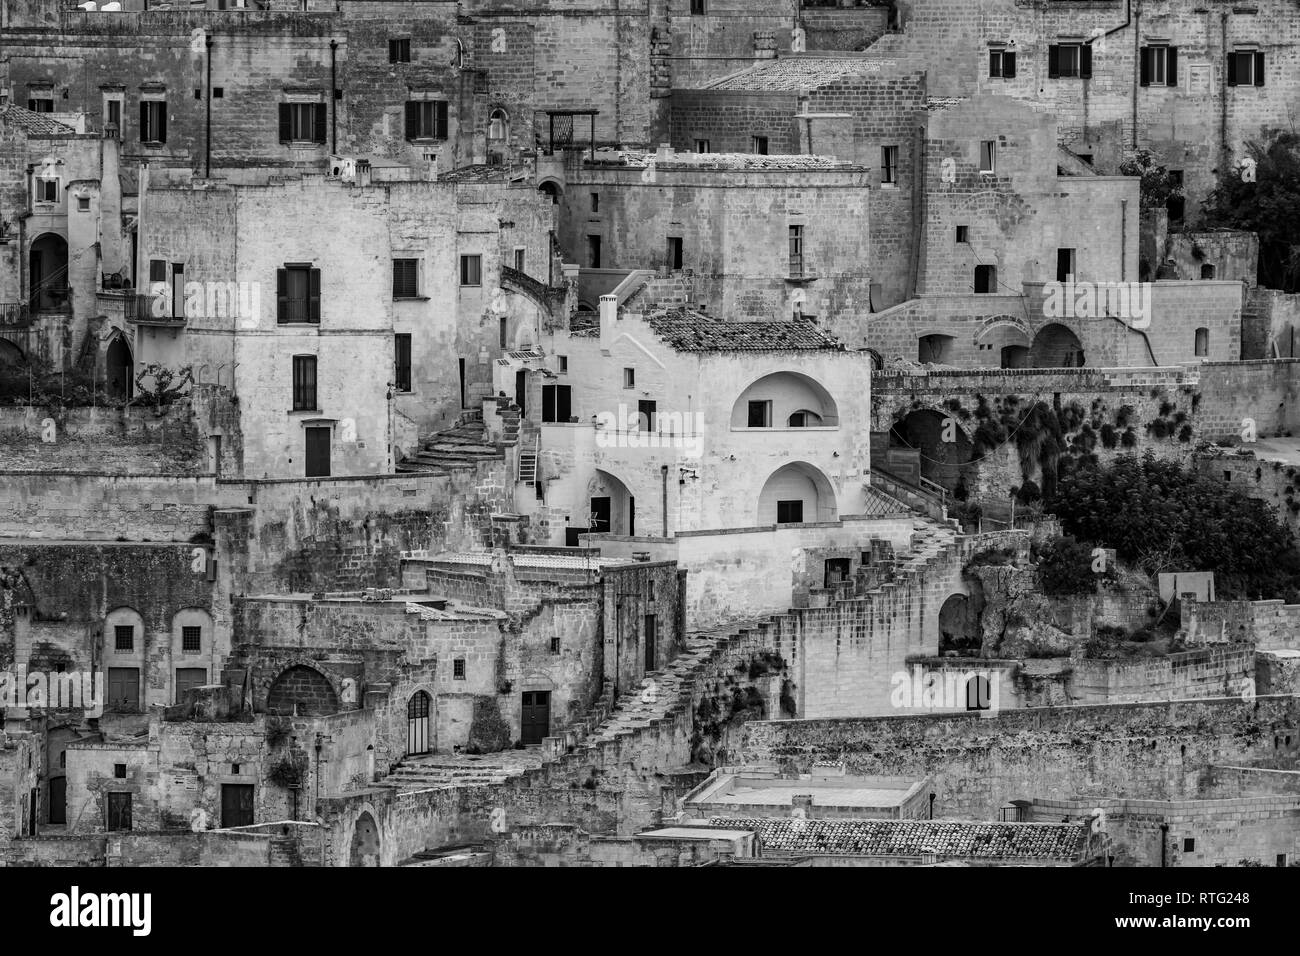 Sorprendentes primeros vista en blanco y negro de la antigua ciudad de Matera, los Sassi di Matera, Basilicata, en el sur de Italia, detalles arquitectónicos y edificios Foto de stock